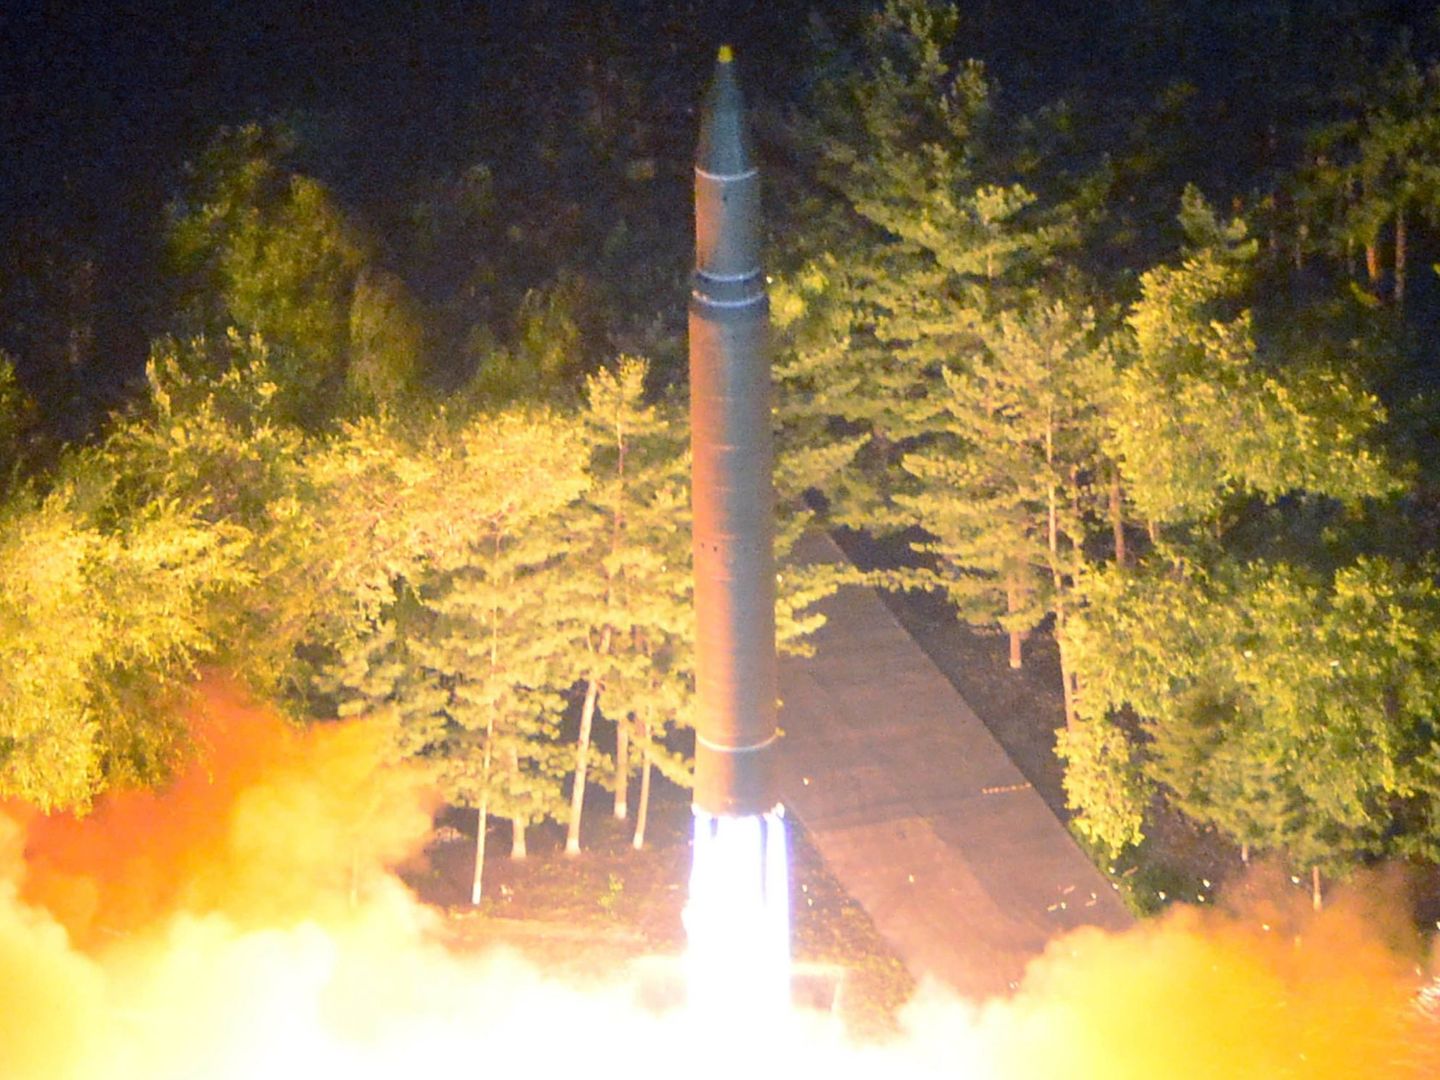 Lanzamiento de un misil balístico intercontinental norcoreano Hwasong-14, el 28 de julio de 2017. (Reuters)